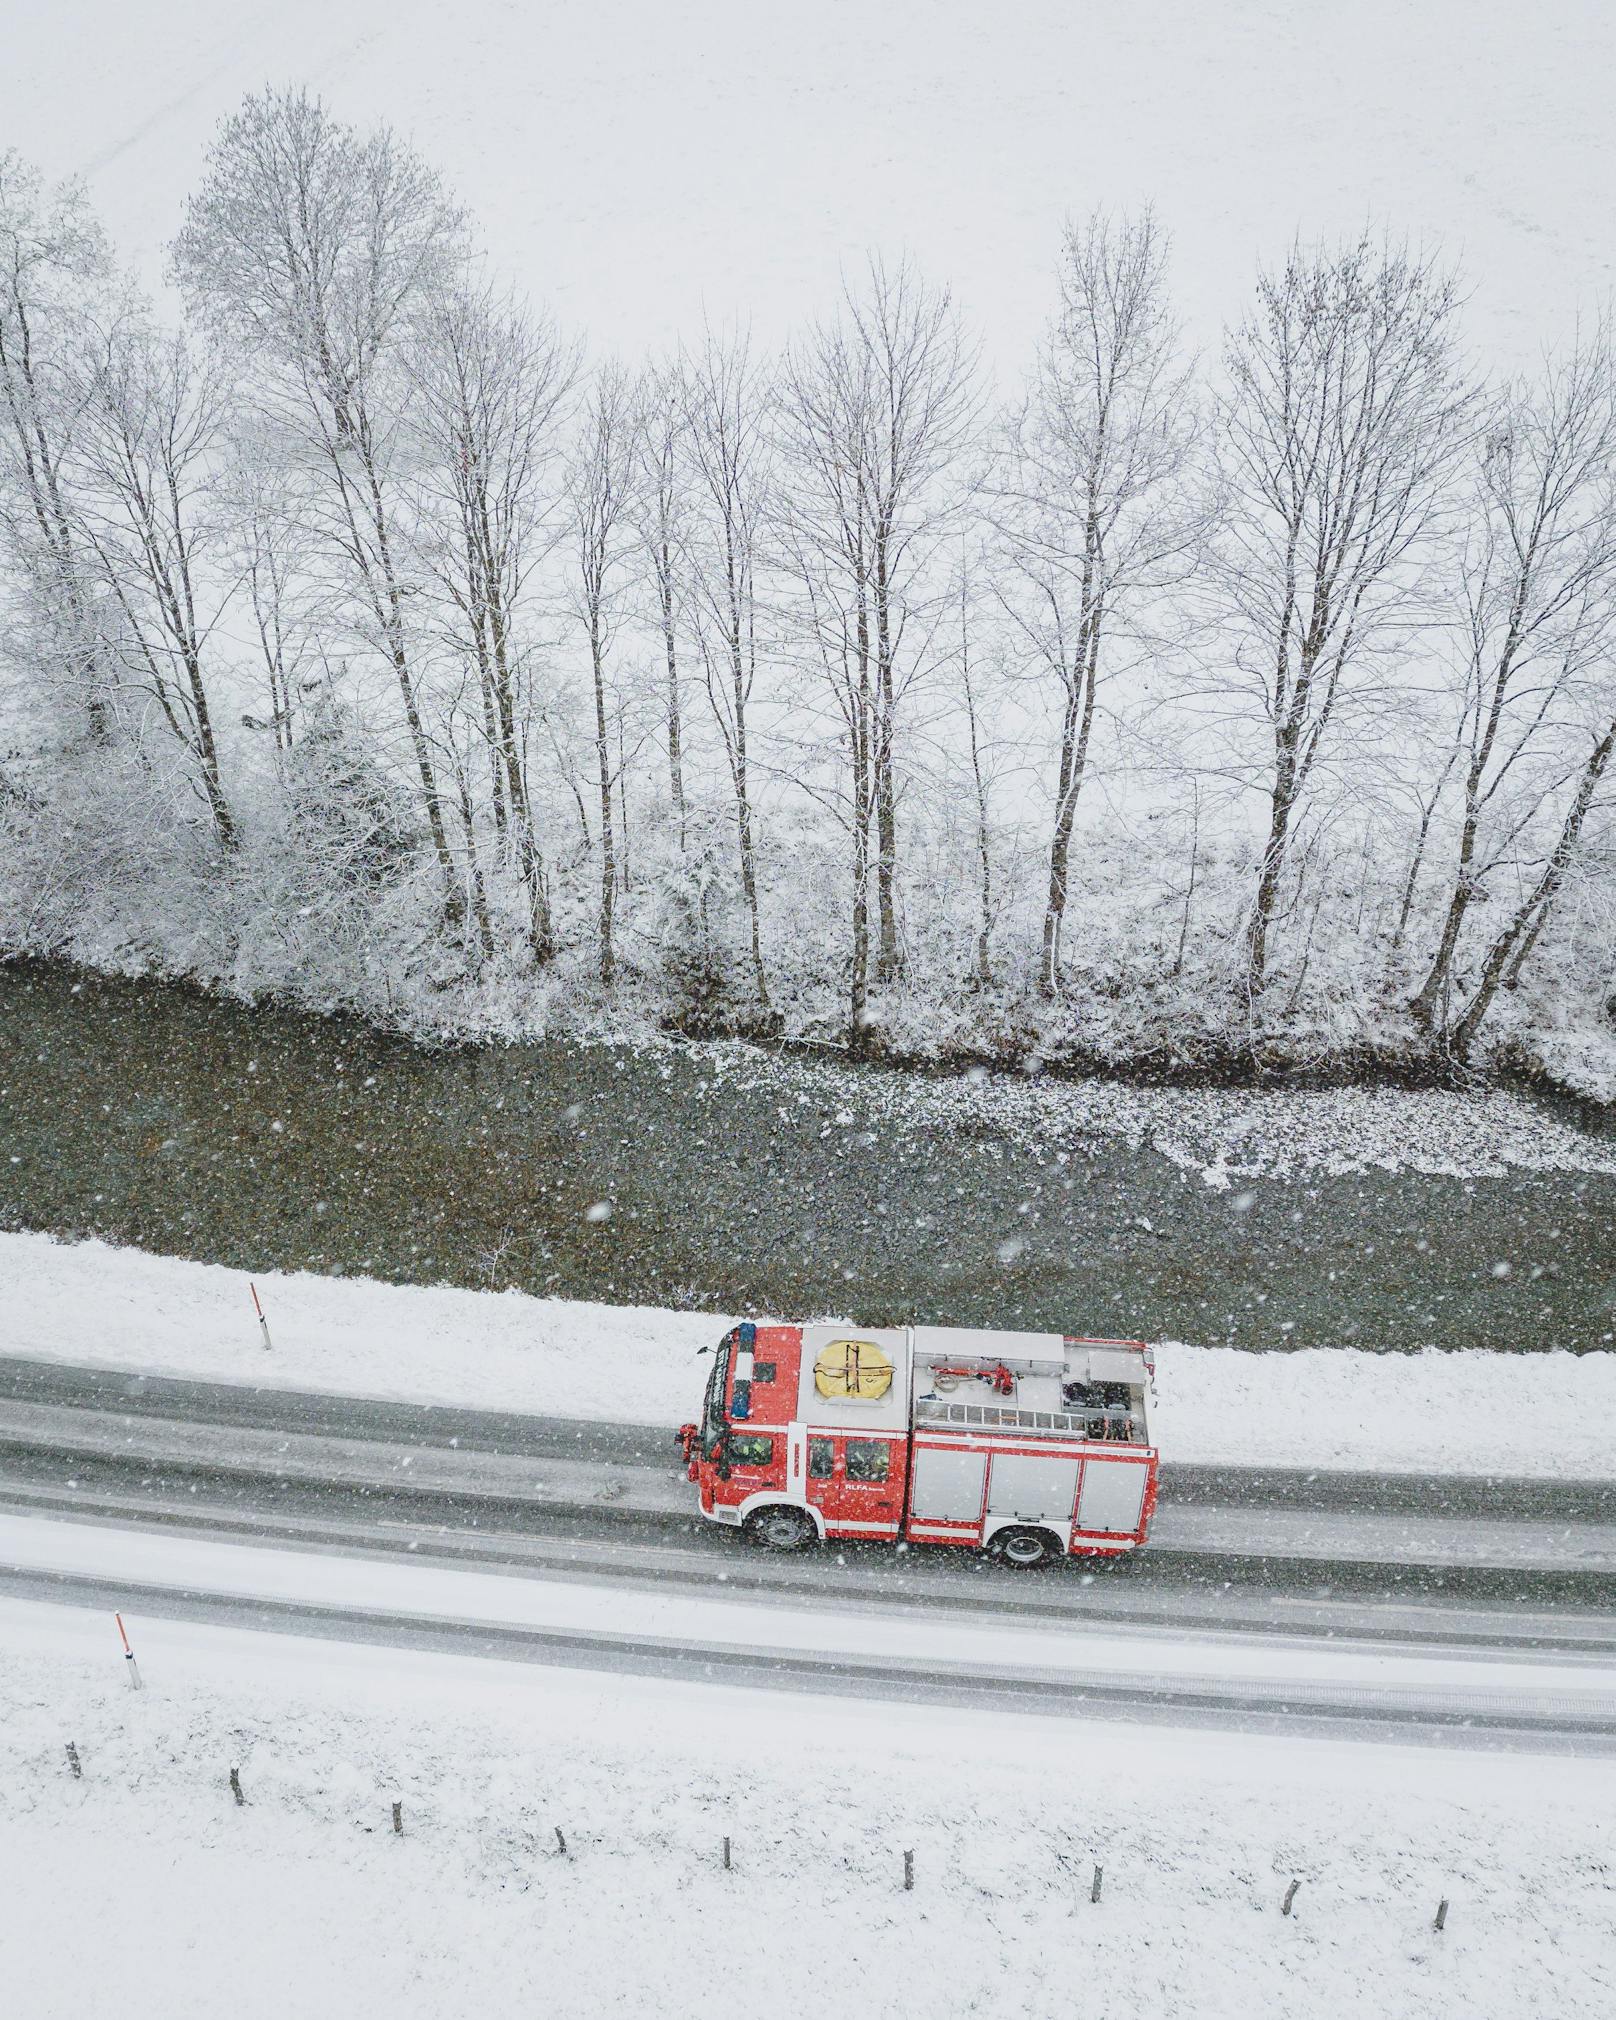 Feuerwehr-Fahrzeug im Einsatz im Schnee, aufgenommen am 22. November 2022 in Kaprun.